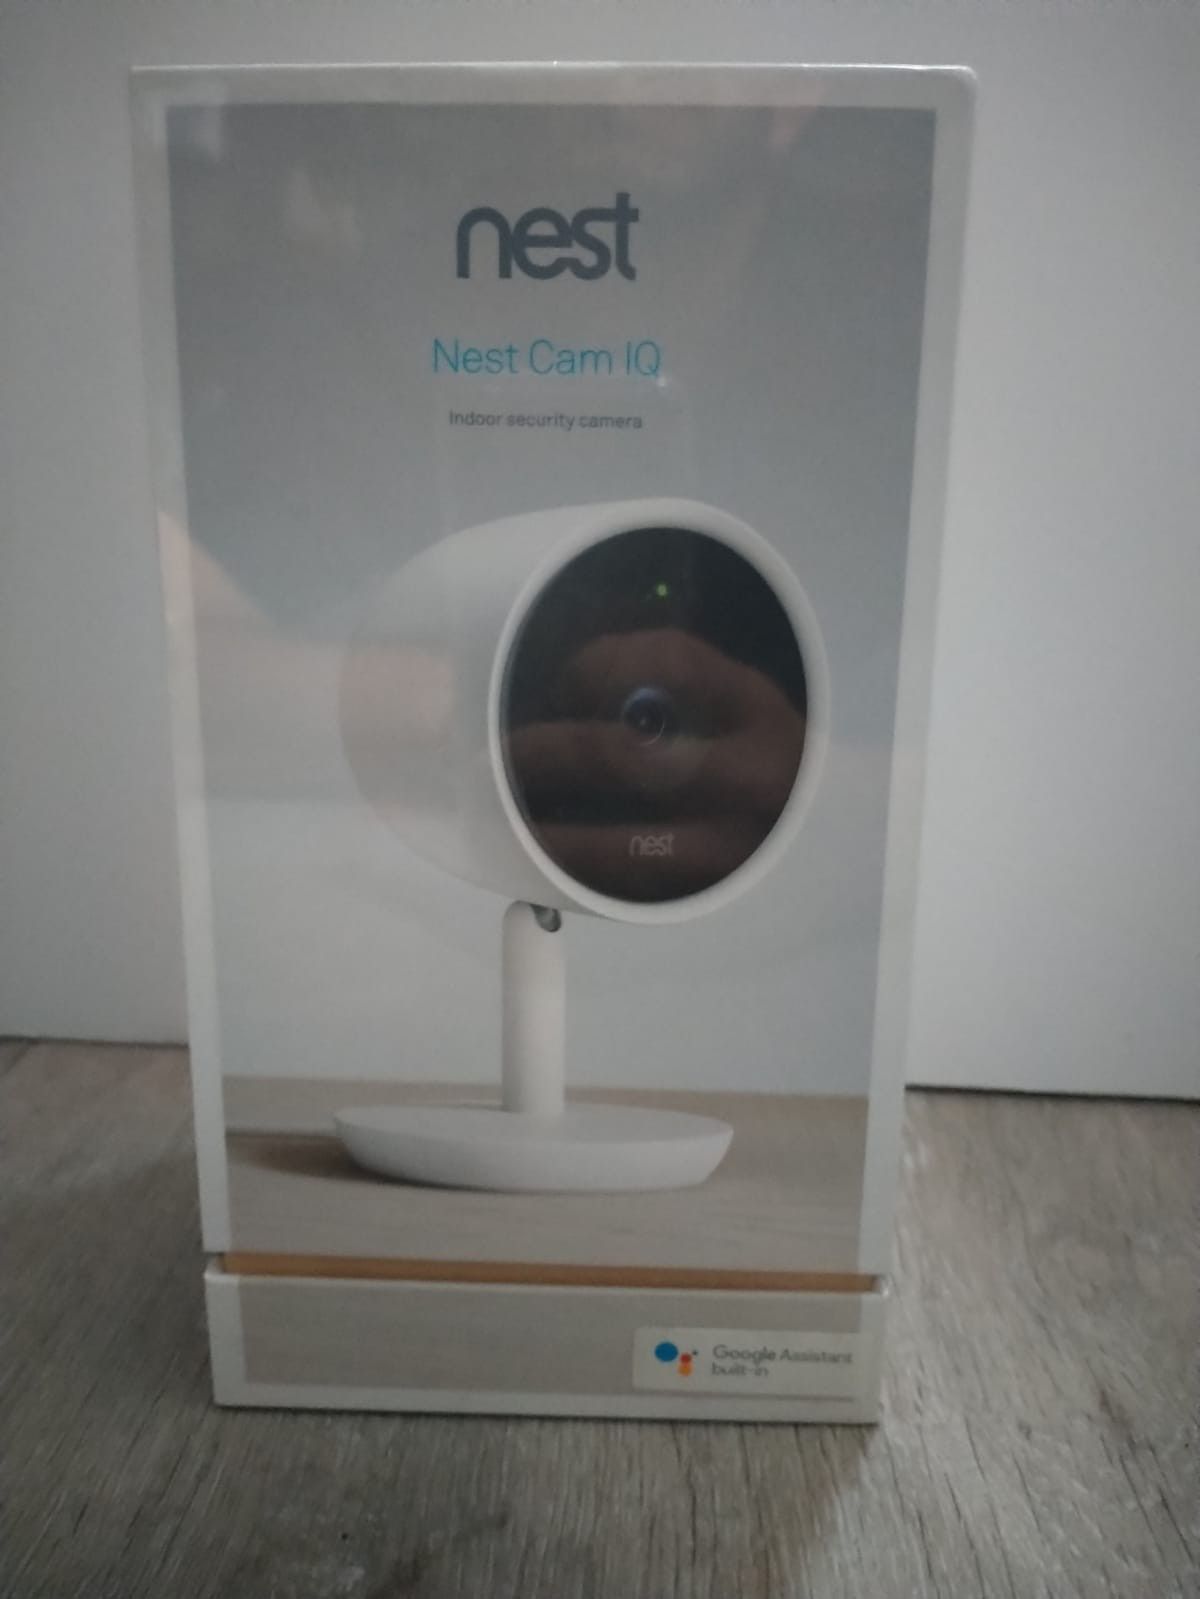 Google Nest Cam IQ - indoor